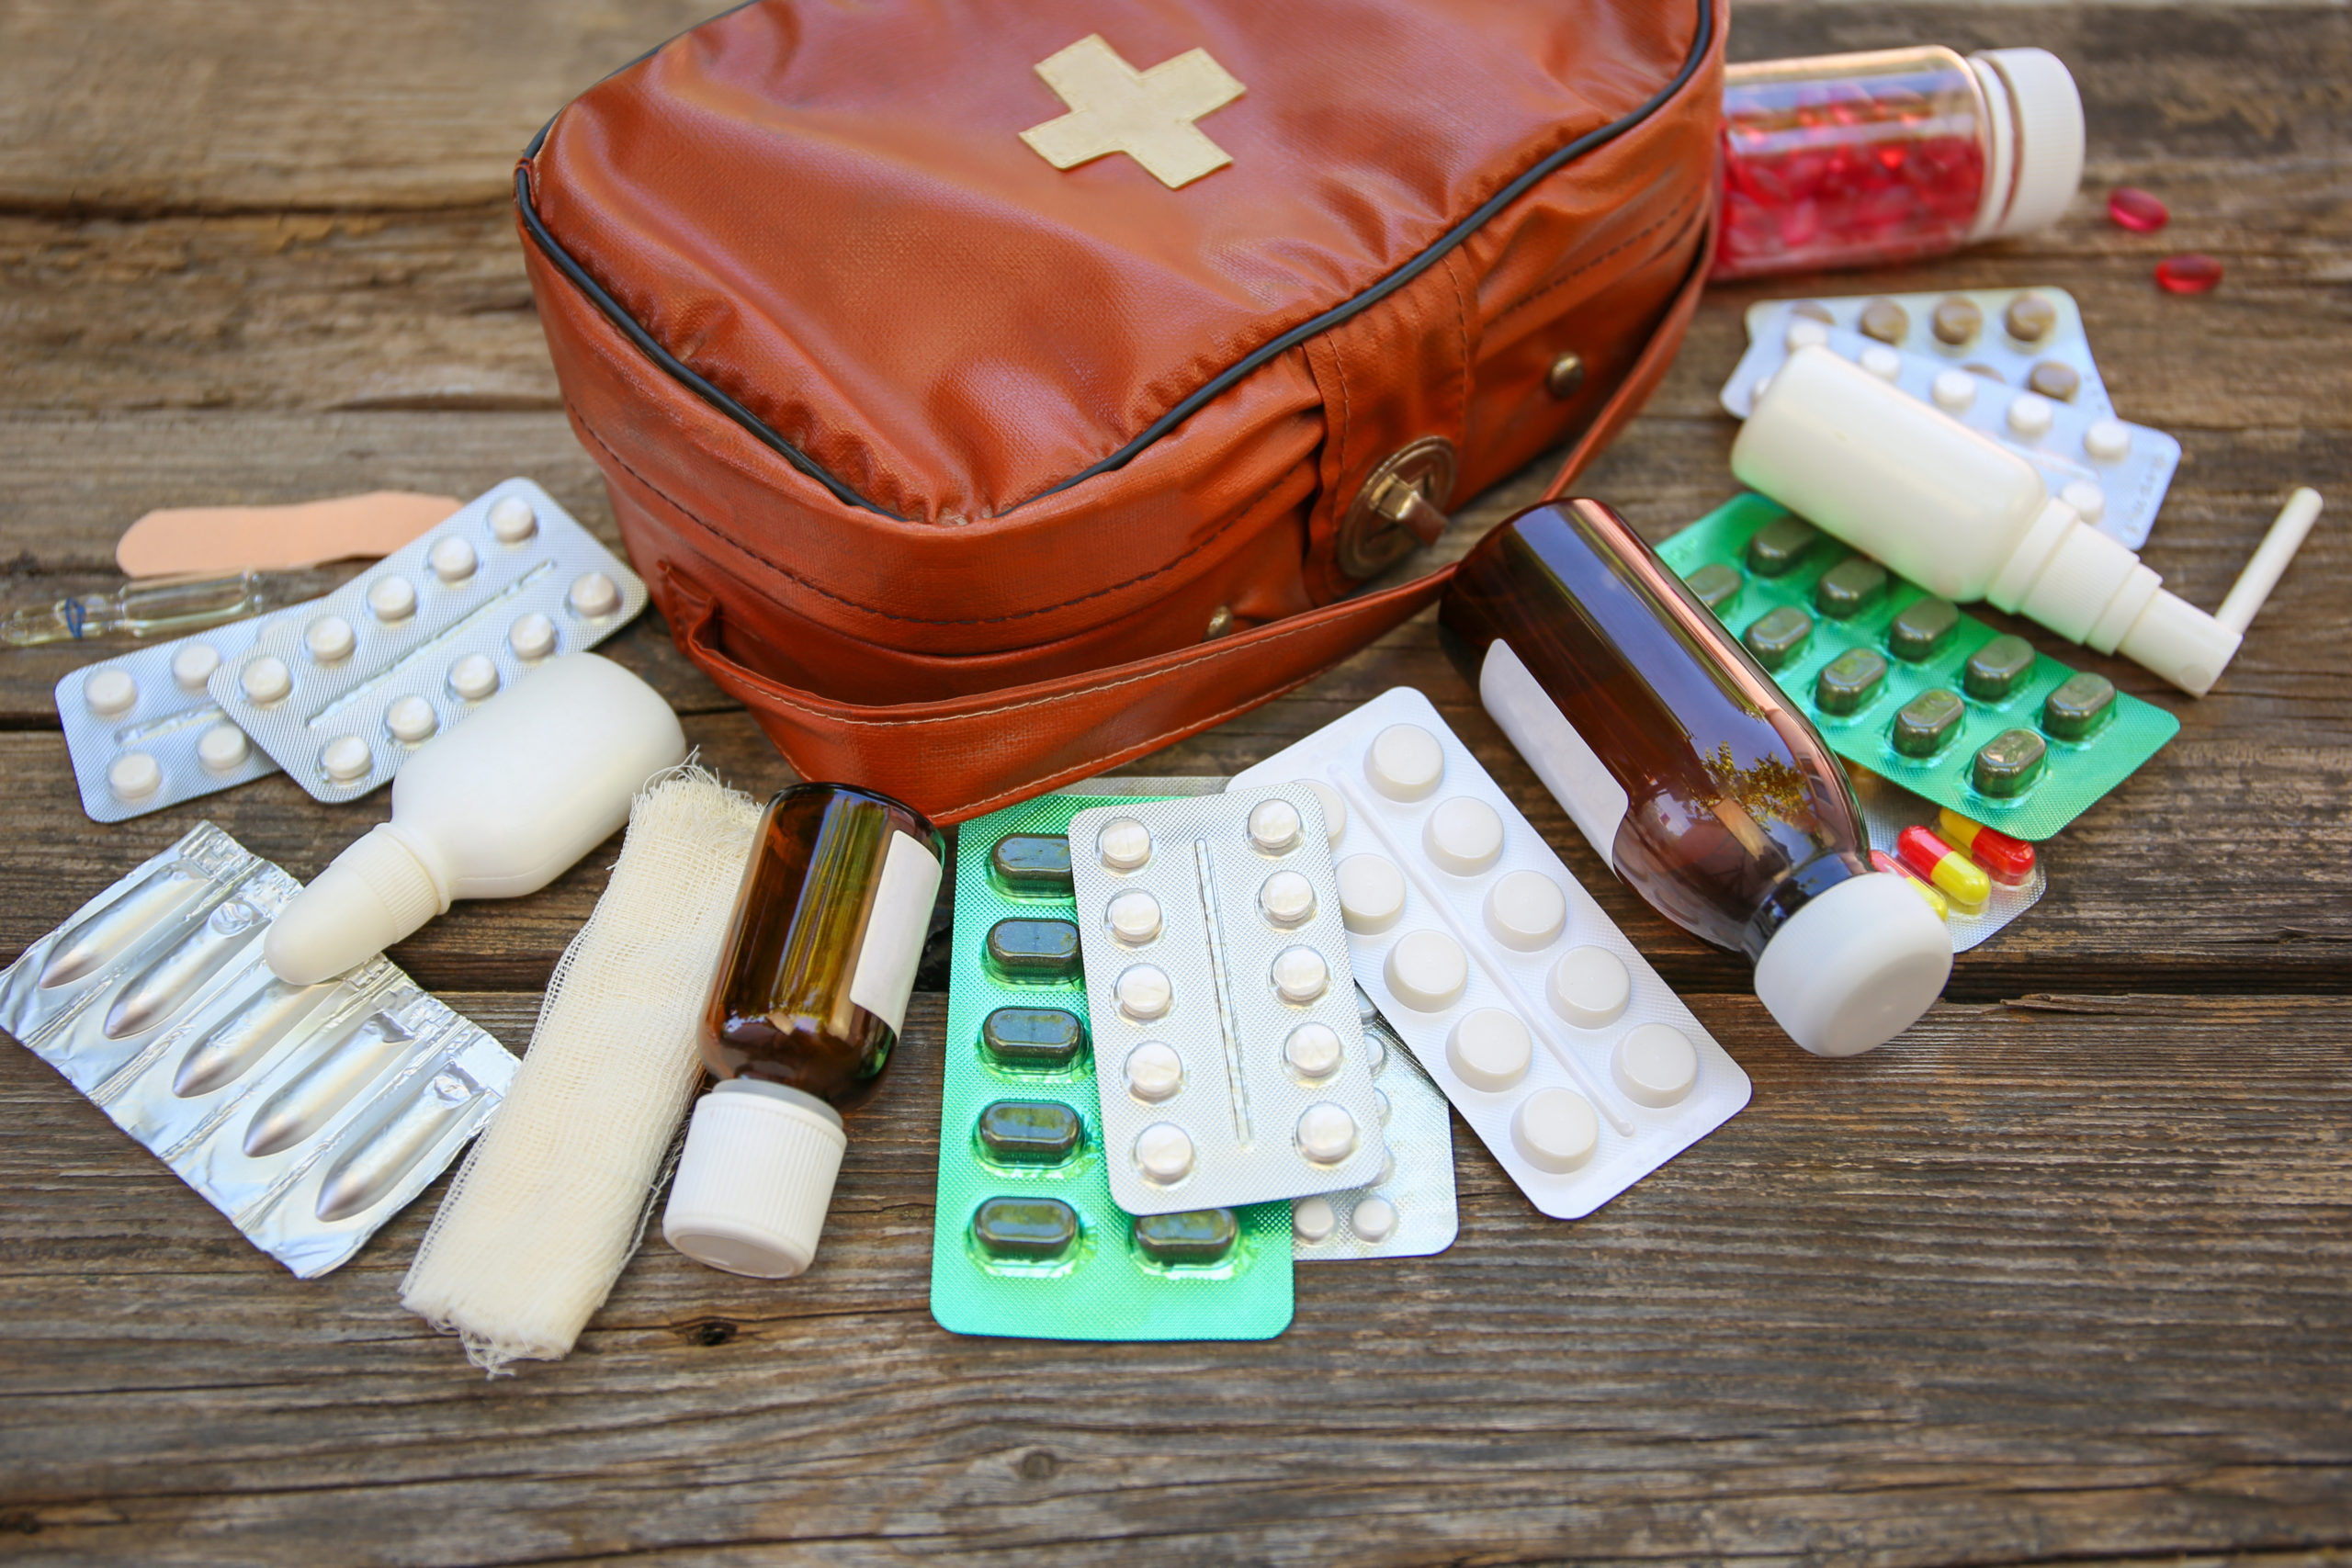 Eine Reiseapotheke in Form einer Erste-Hilfe-Tasche liegt auf Holz, davor liegen Tabletten, Zäpfchen, Medikamentenflaschen und Verbandszeug.